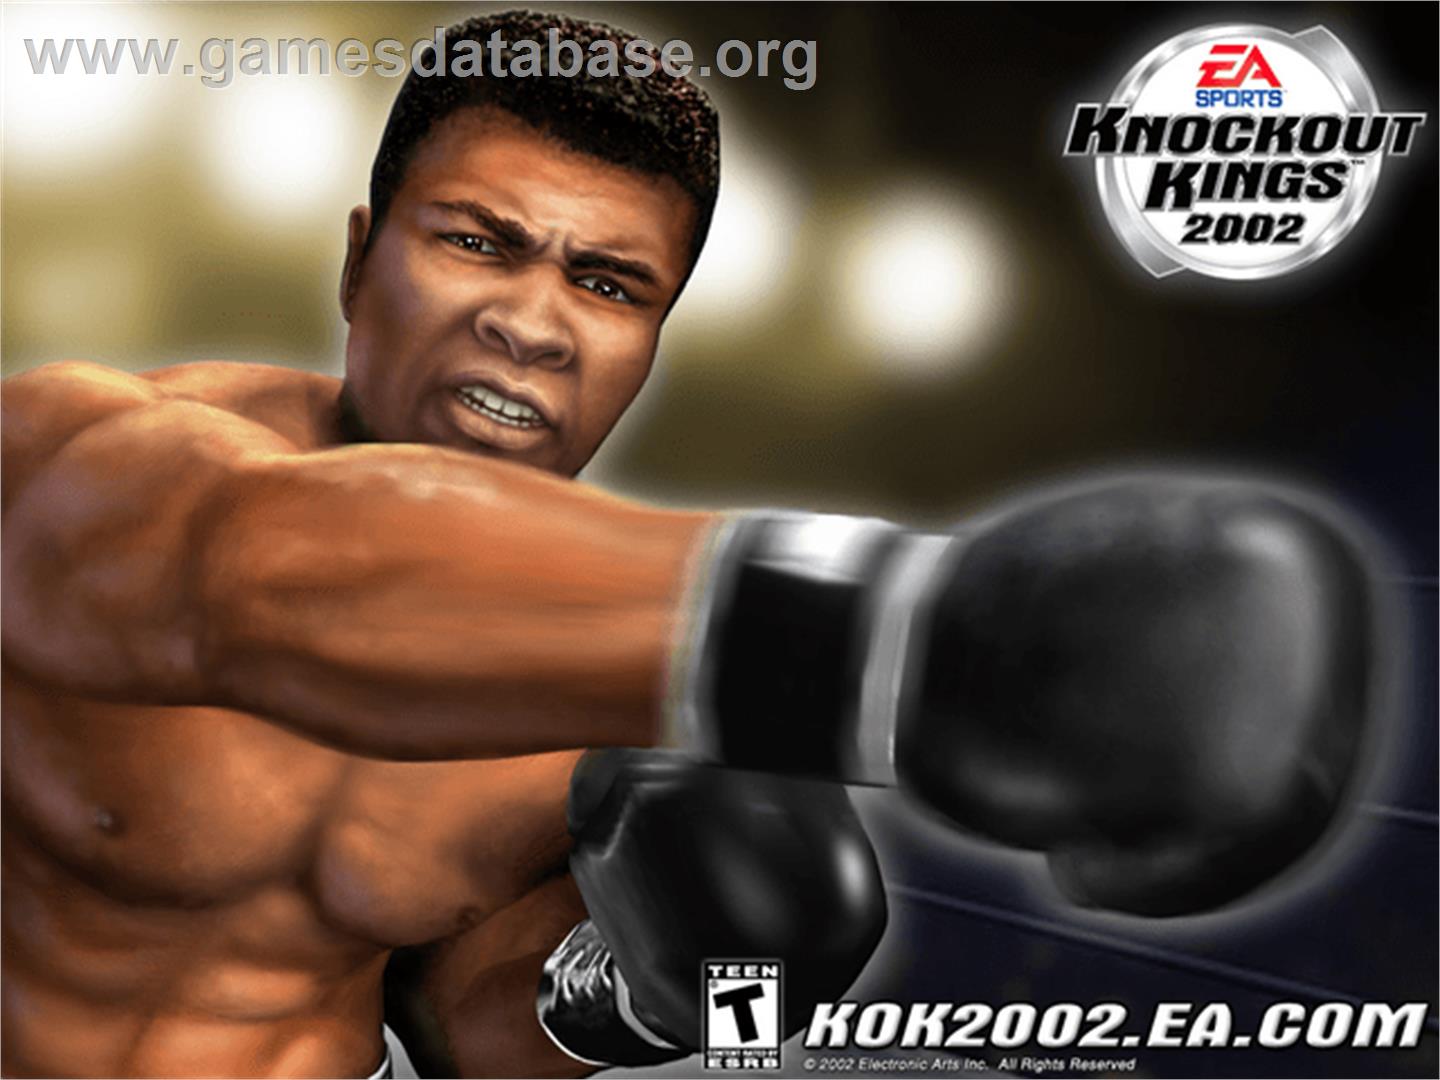 Knockout Kings 2002 - Microsoft Xbox - Artwork - Title Screen